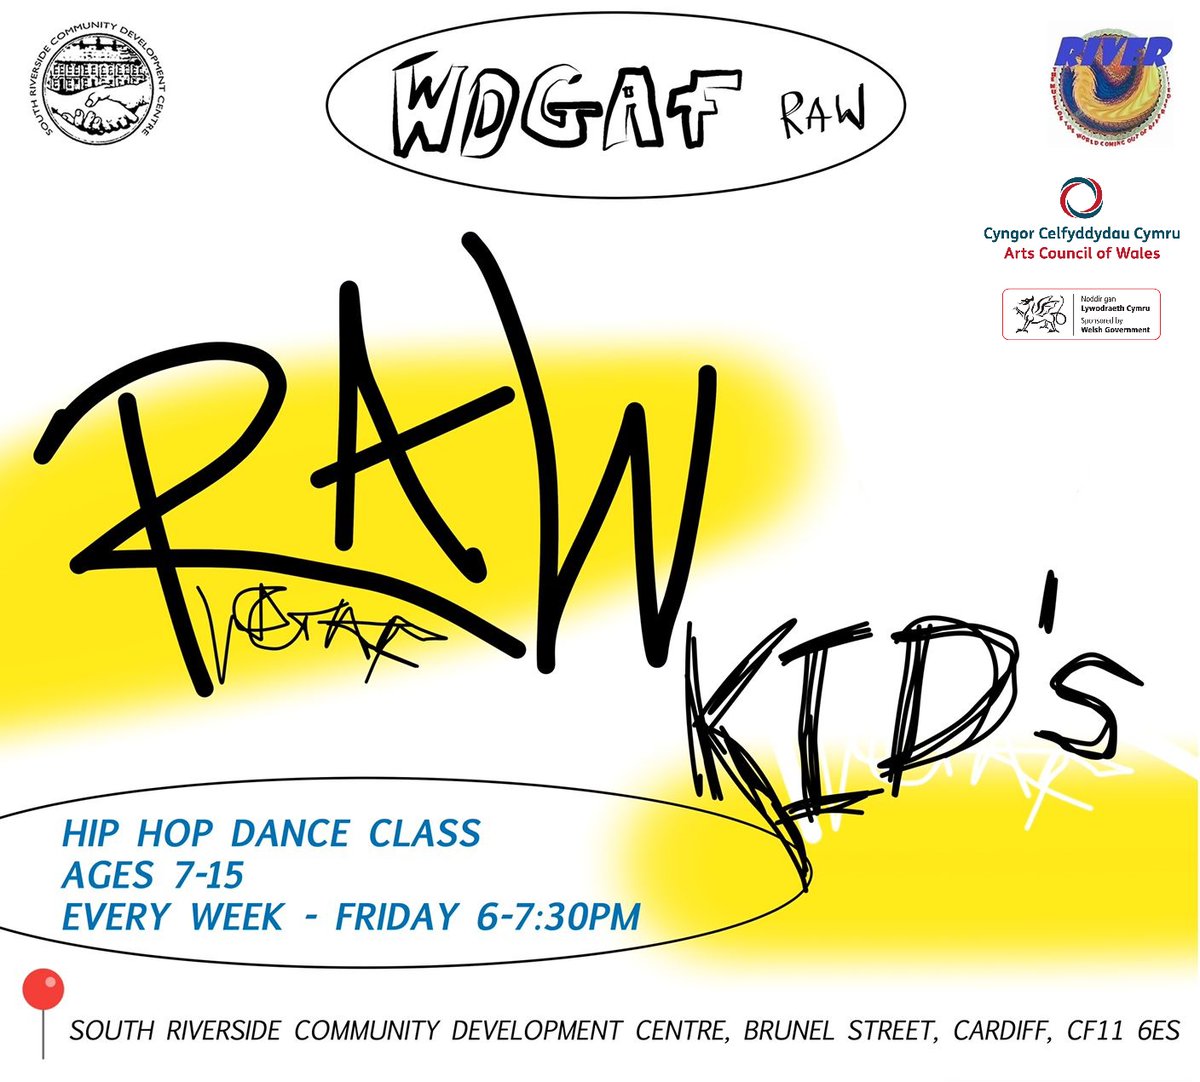 Hip Hop Dance 4 Y'all 🤠 Coming To Riverside ! Starts Friday !! / Dawns Hip Hop am chi gyd, Yn Dod I Lan yr Afon ! Dechrau dydd Gwener !! رقصة الهيب هوب لكم جميعًا، قادمة إلى ريفرسايد! يبدأ الجمعة !! instagram.com/wdgafraw/ Thanx 2 @Arts_Wales_ 🙏@SRCDC_Cardiff